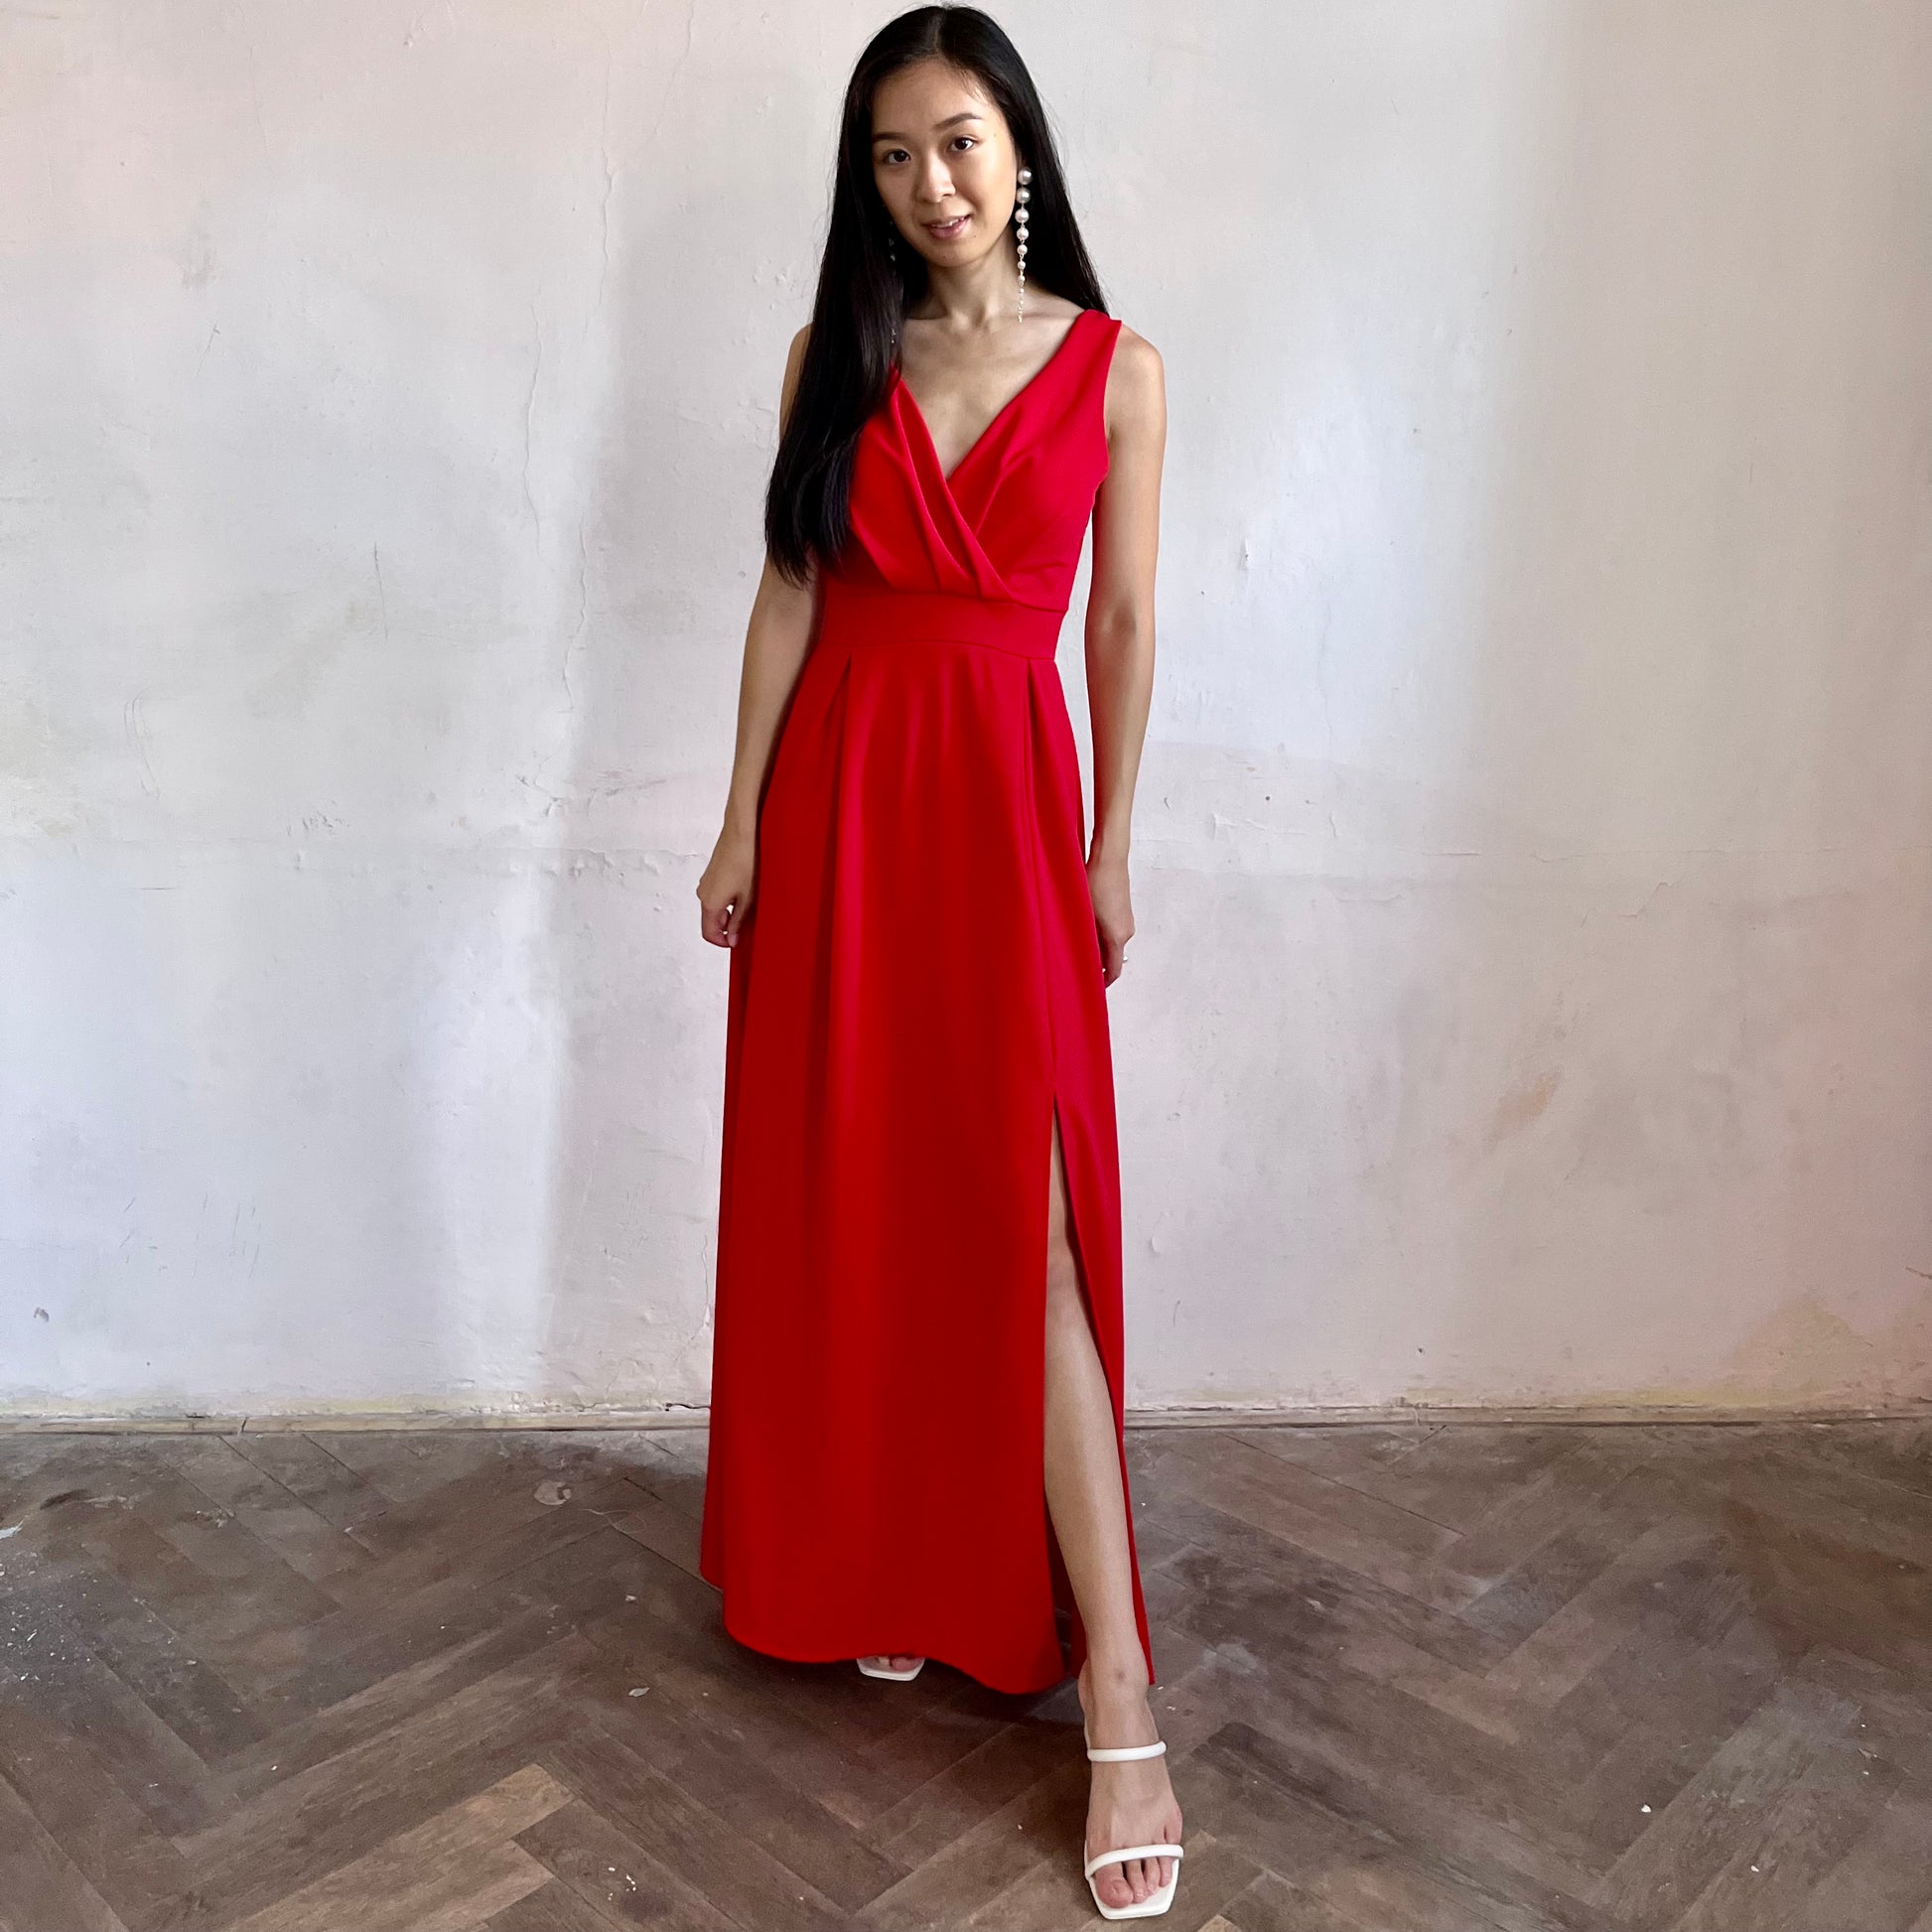 Modelka asijského původu pózující zepředu oblečená v červených společenských šatech